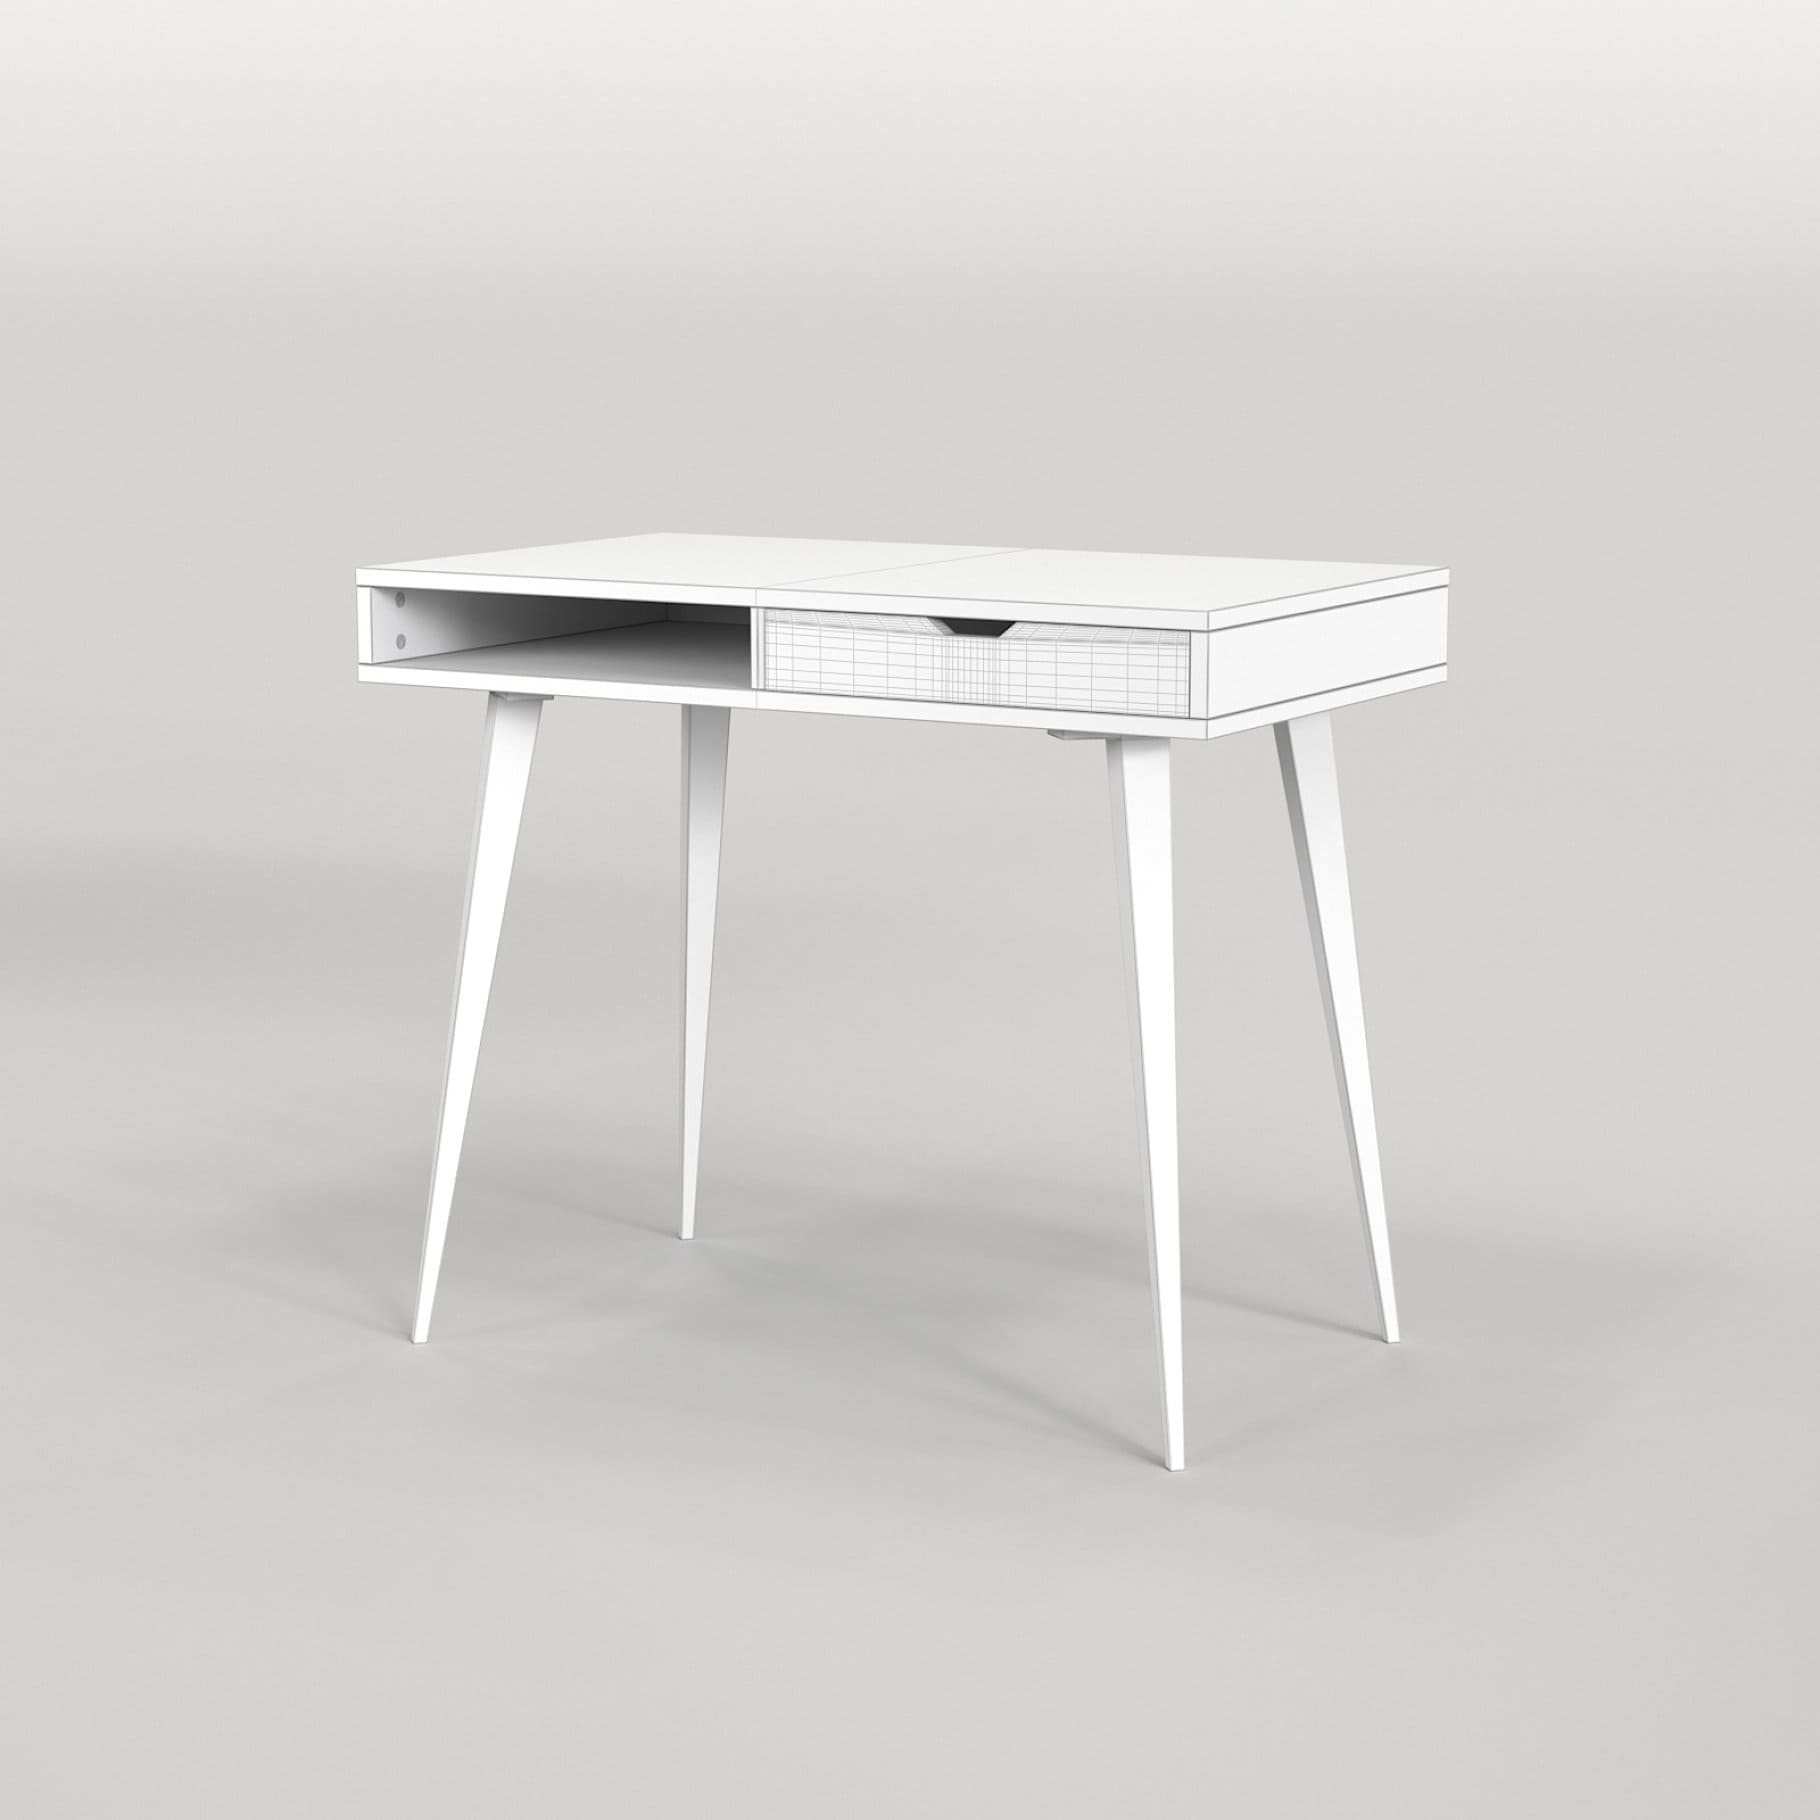 White Scandinavian desk with shelves model 04.